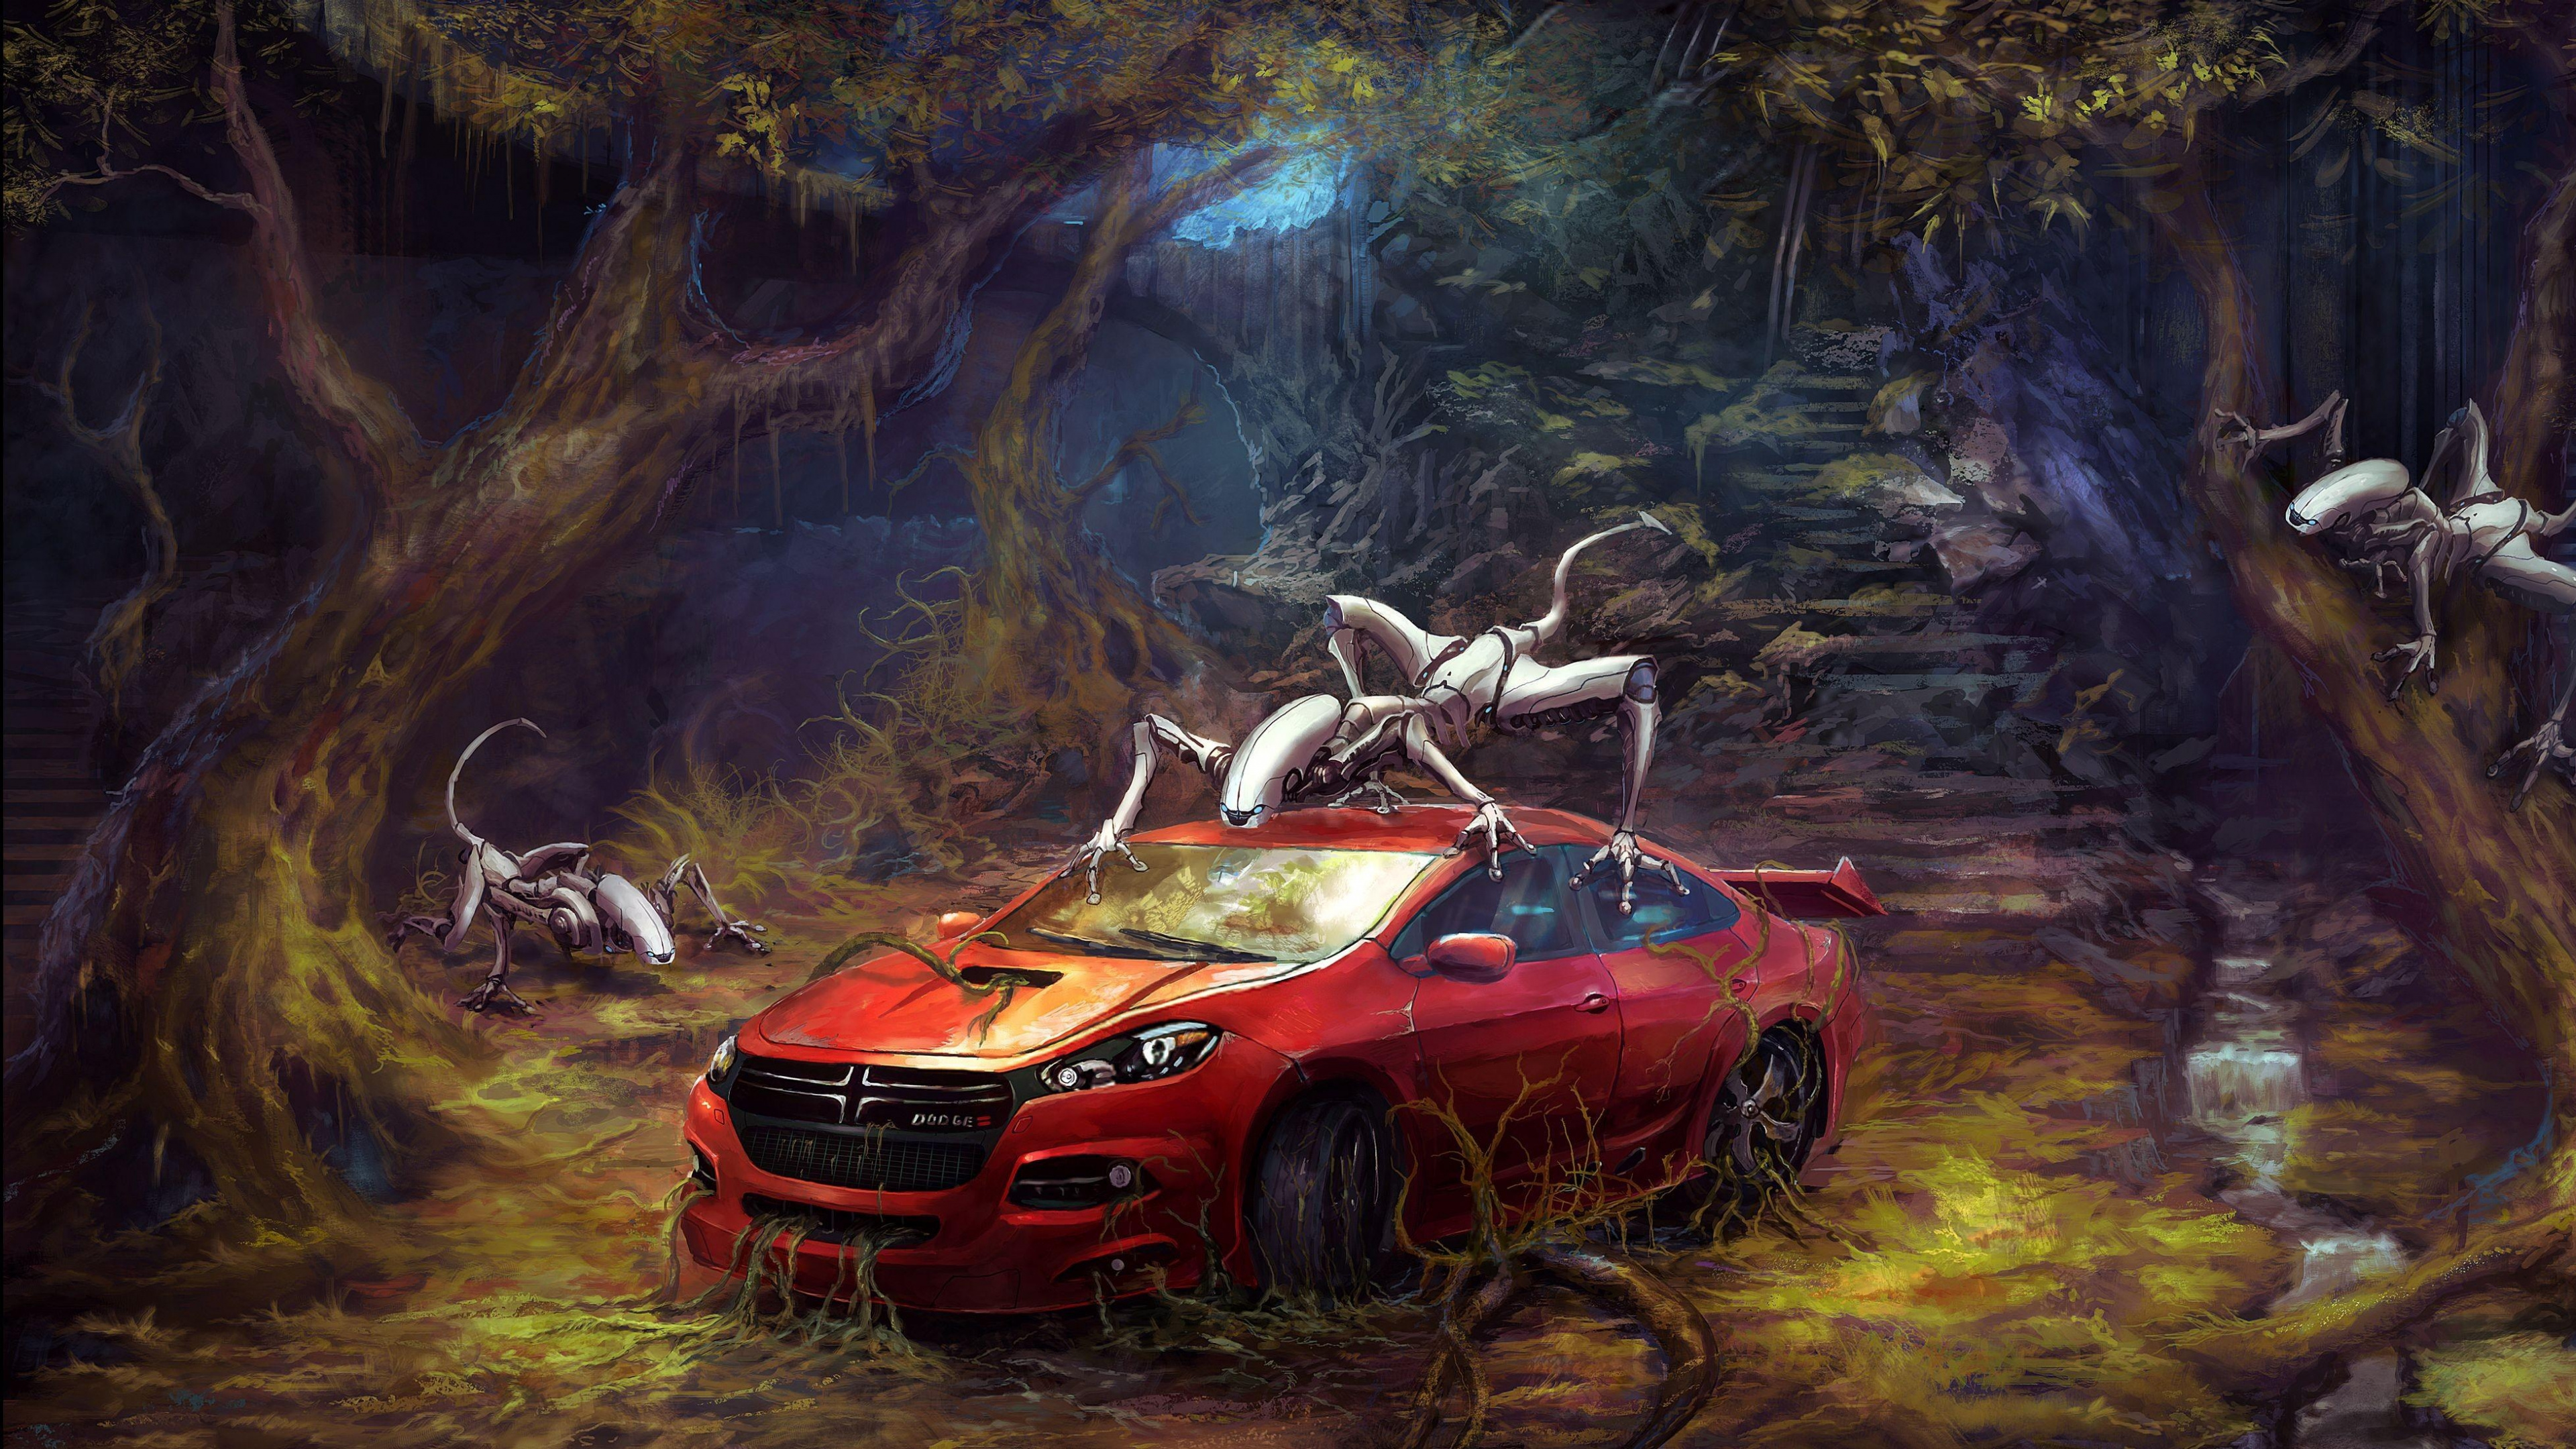 Roter Und Schwarzer Chevrolet-Camaro. Wallpaper in 3840x2160 Resolution